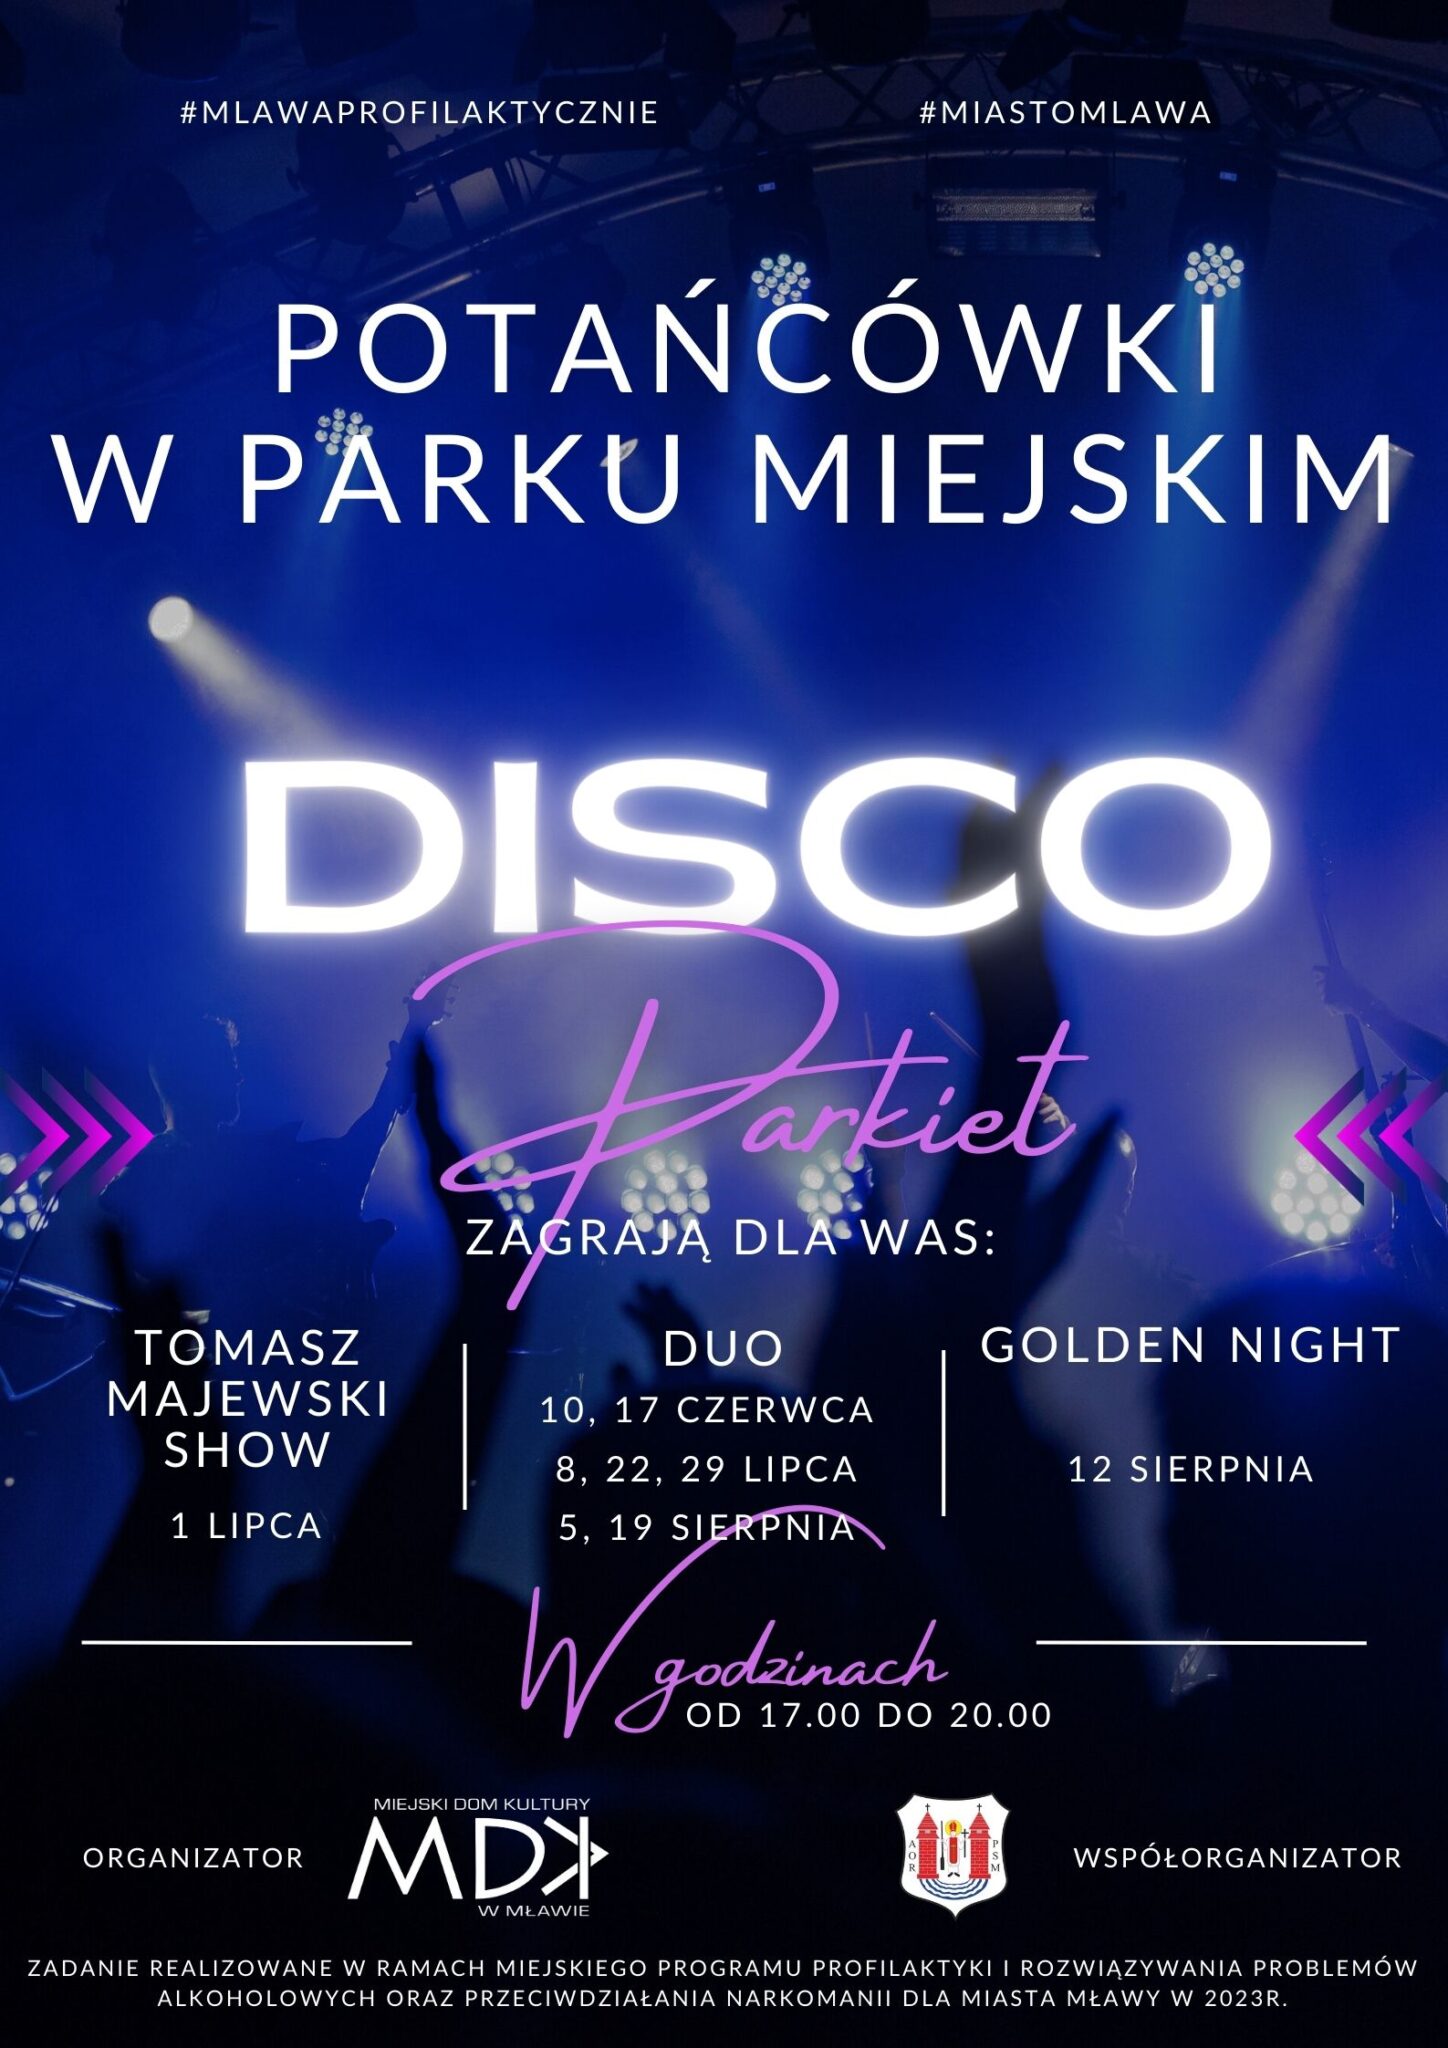 disco-parkiet-plakat-1448x2048.jpg 288